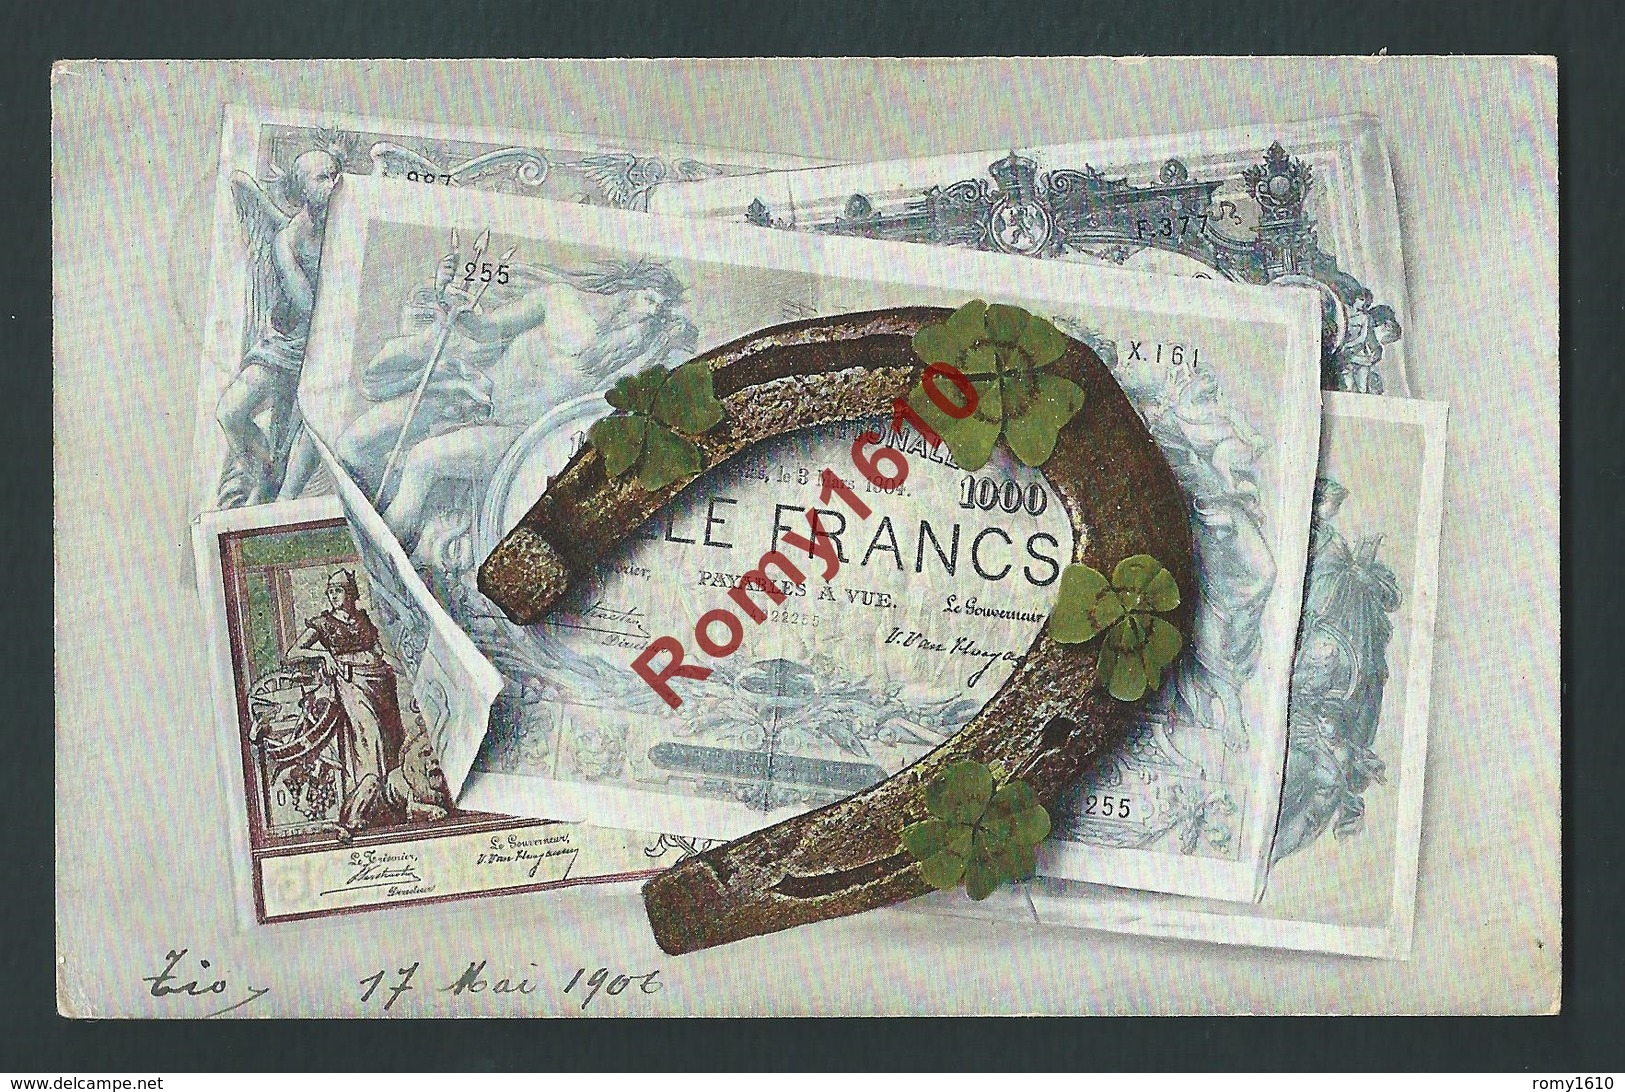 Litho Billet De Banque Porte Bonheur. 1000 Francs. Fer à Cheval, Trèfles. Circulé En 1900. Série 965.  2 Scans. - Monnaies (représentations)